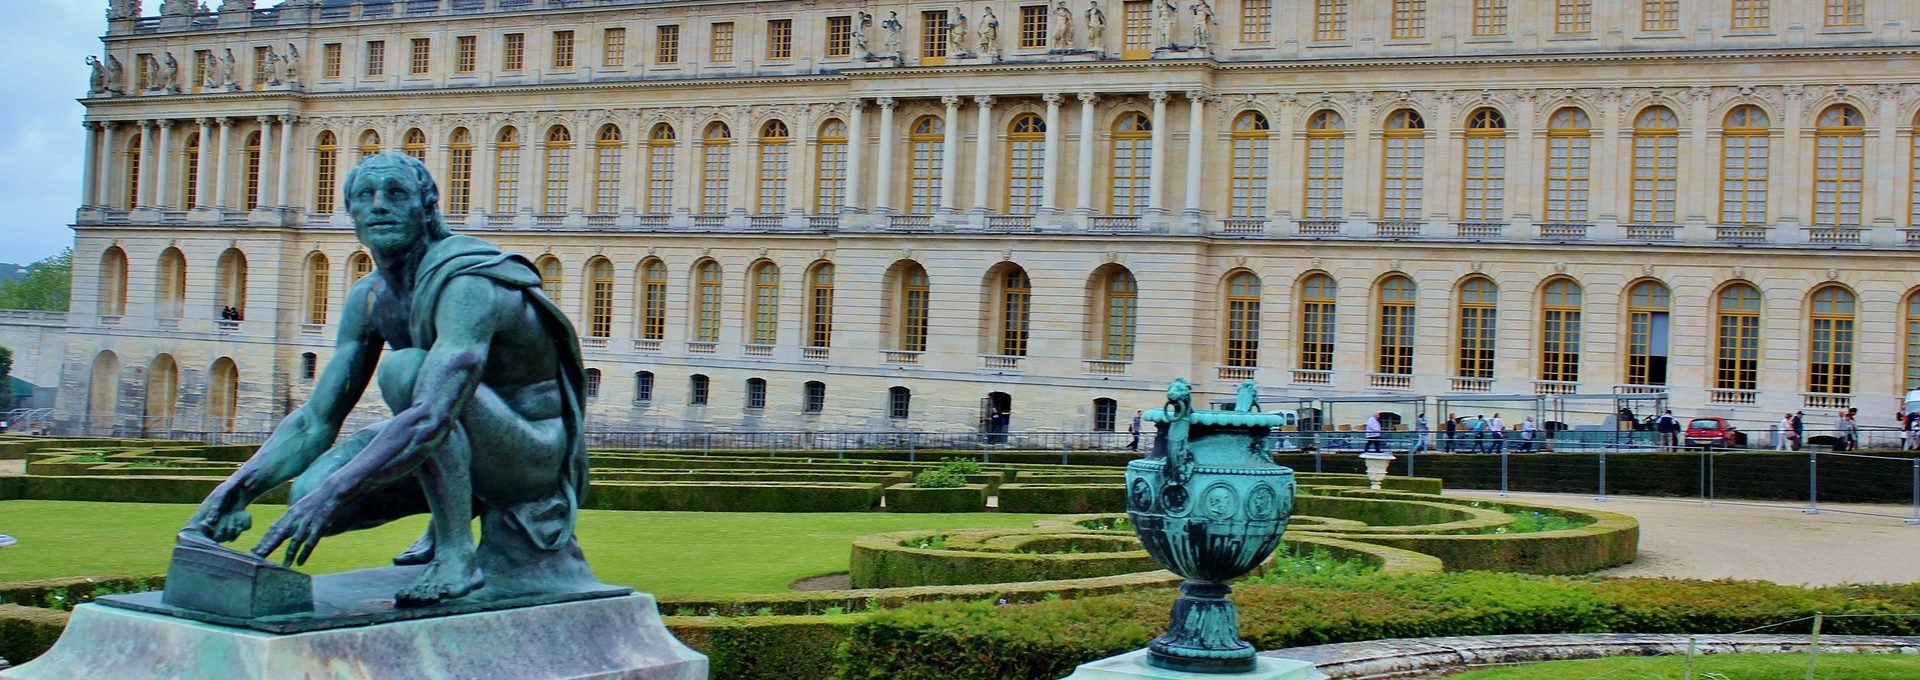 Vista do Palácio de Versalhes